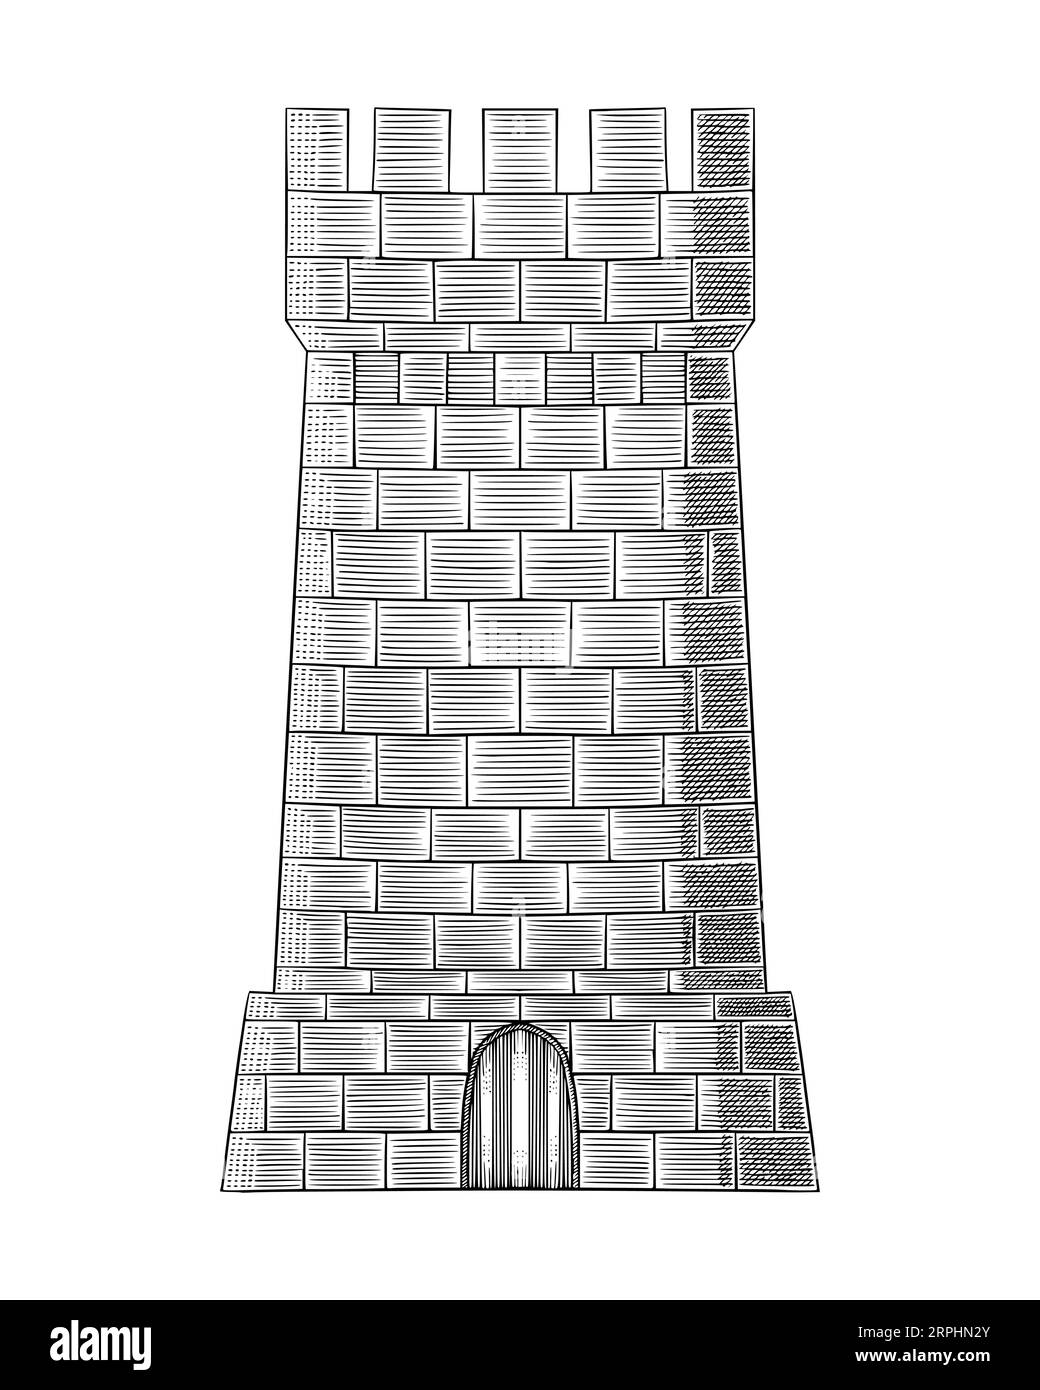 Torre castillo de fortaleza, ilustración vectorial de estilo de dibujo grabado vintage Ilustración del Vector